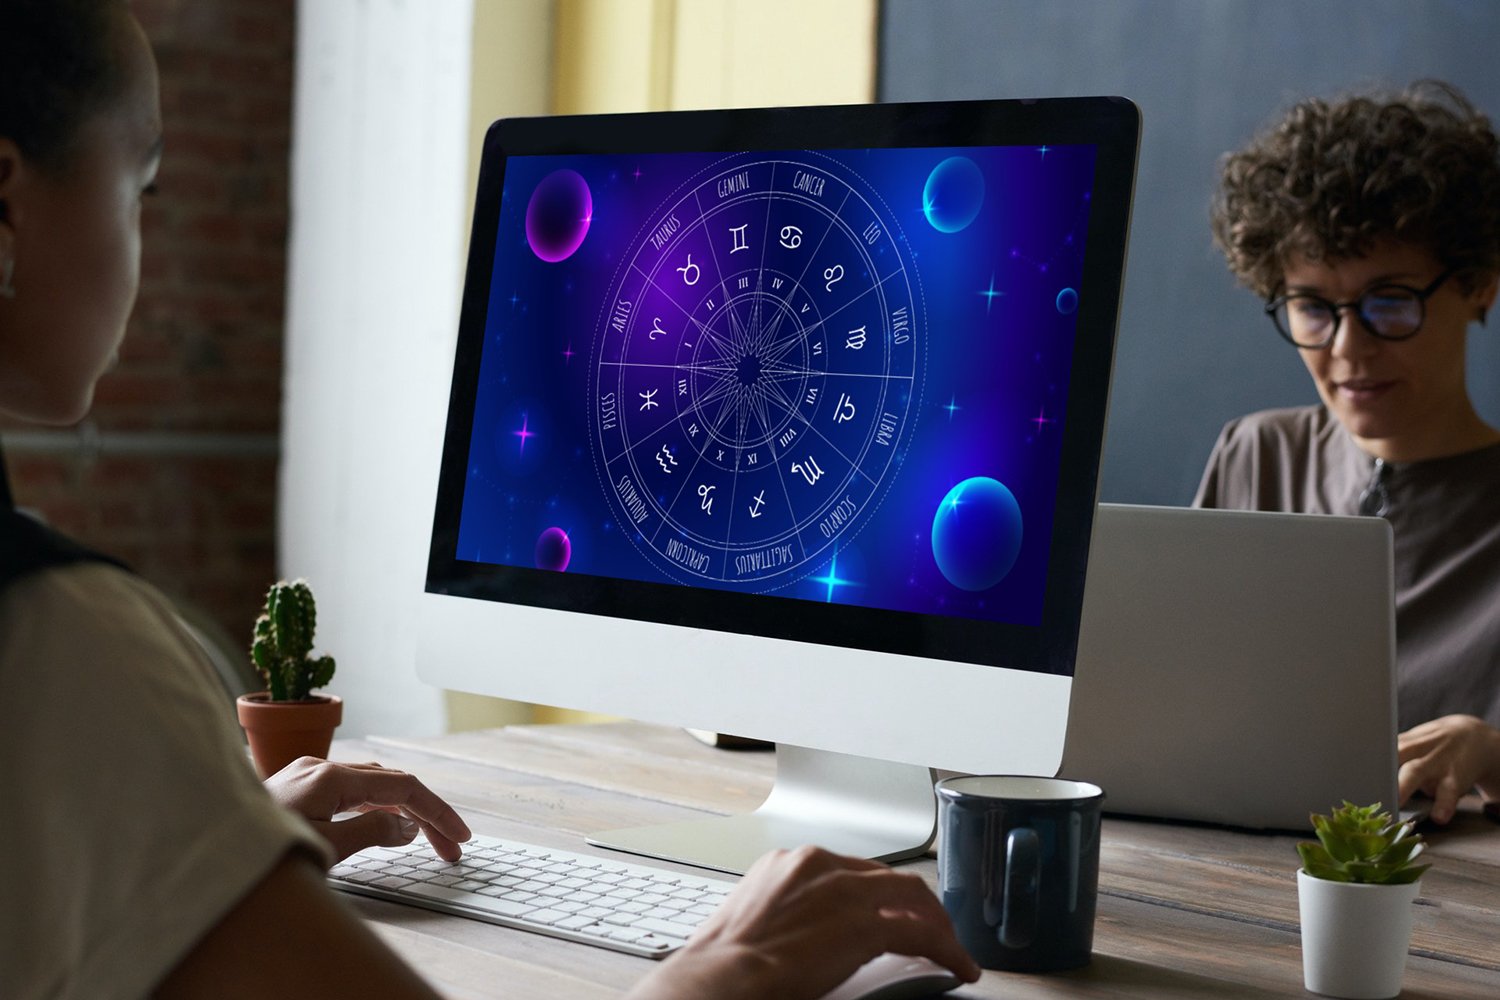 Purple zodiac wheel on a desktop display.